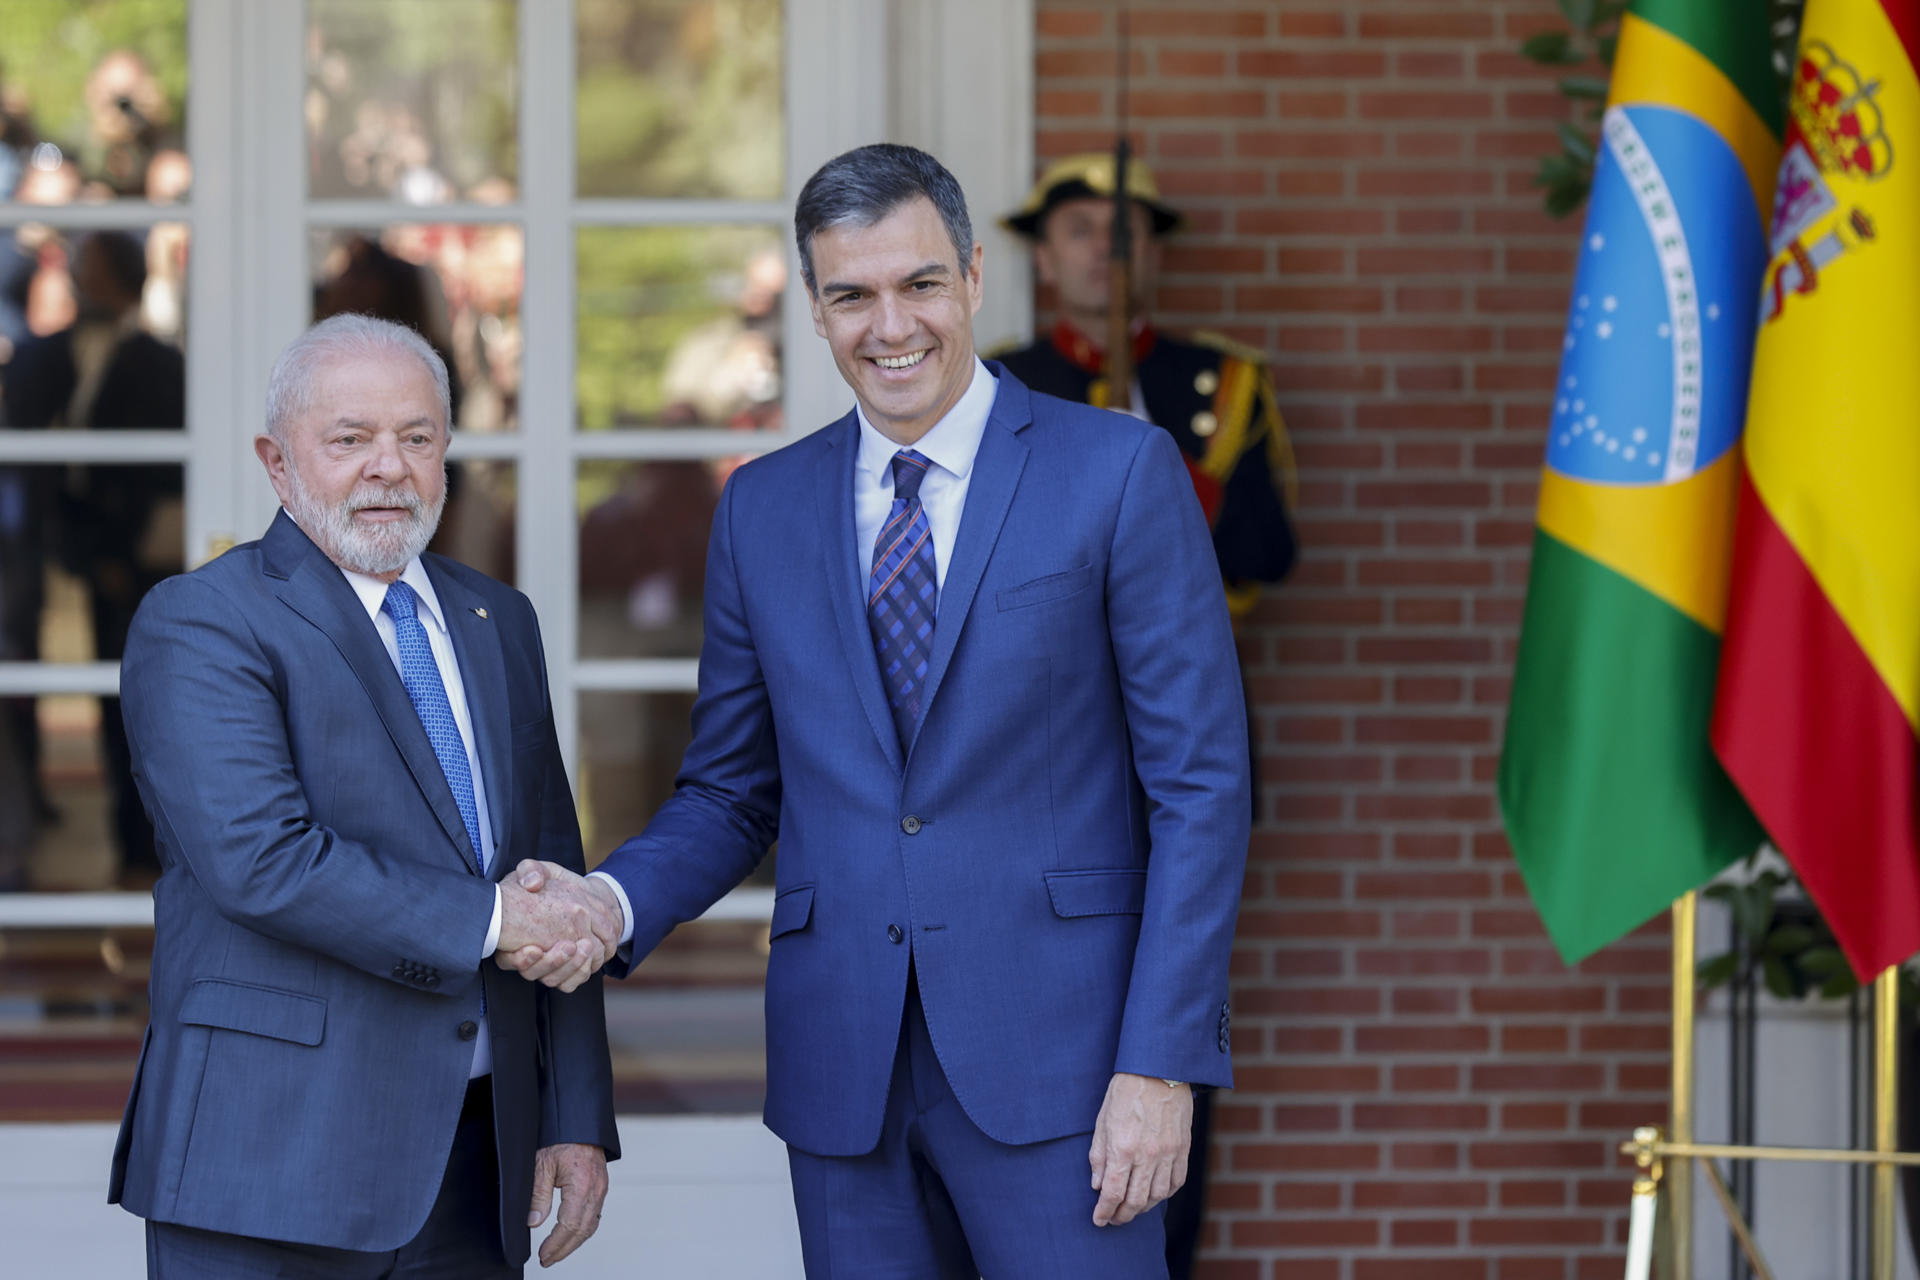 Foto de arquivo do presidente do governo da Espanha, Pedro Sánchez, ao lado do presidente Luiz Inácio Lula da Silva no Palácio da Moncloa, em Madri. EFE/ARQUIVO/Javier Lizón